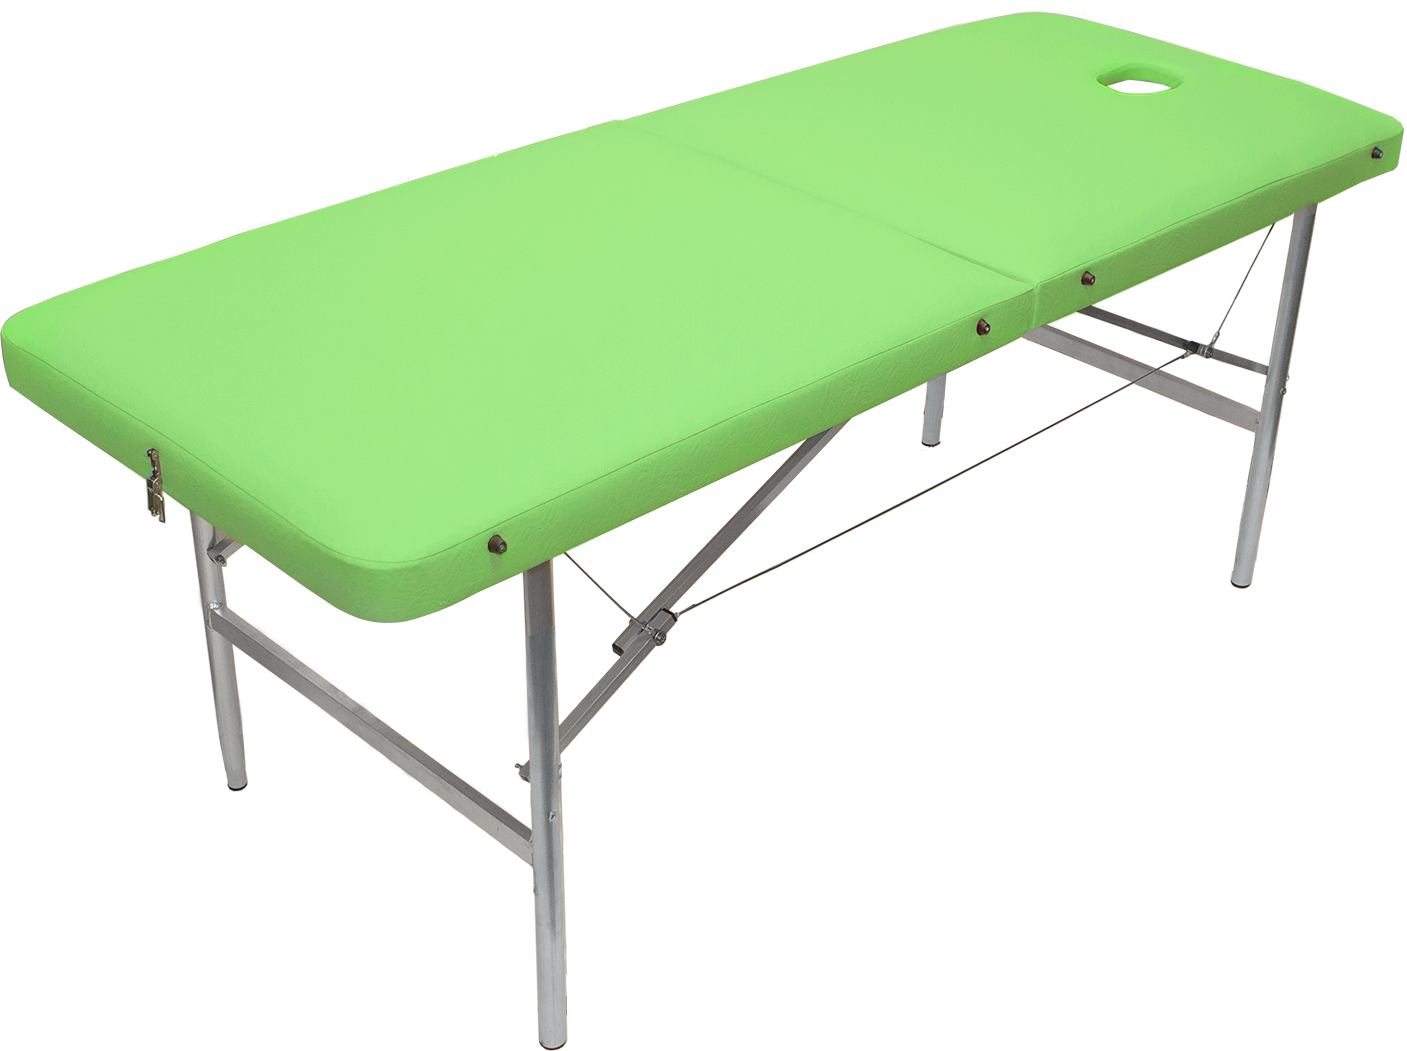 Массажный стол универсальный XL, складной, 190х70, вырез для лица, ножки сталь, для массажа, для расслабляющего массажа, для работы на выезде, экокожа, фисташковый